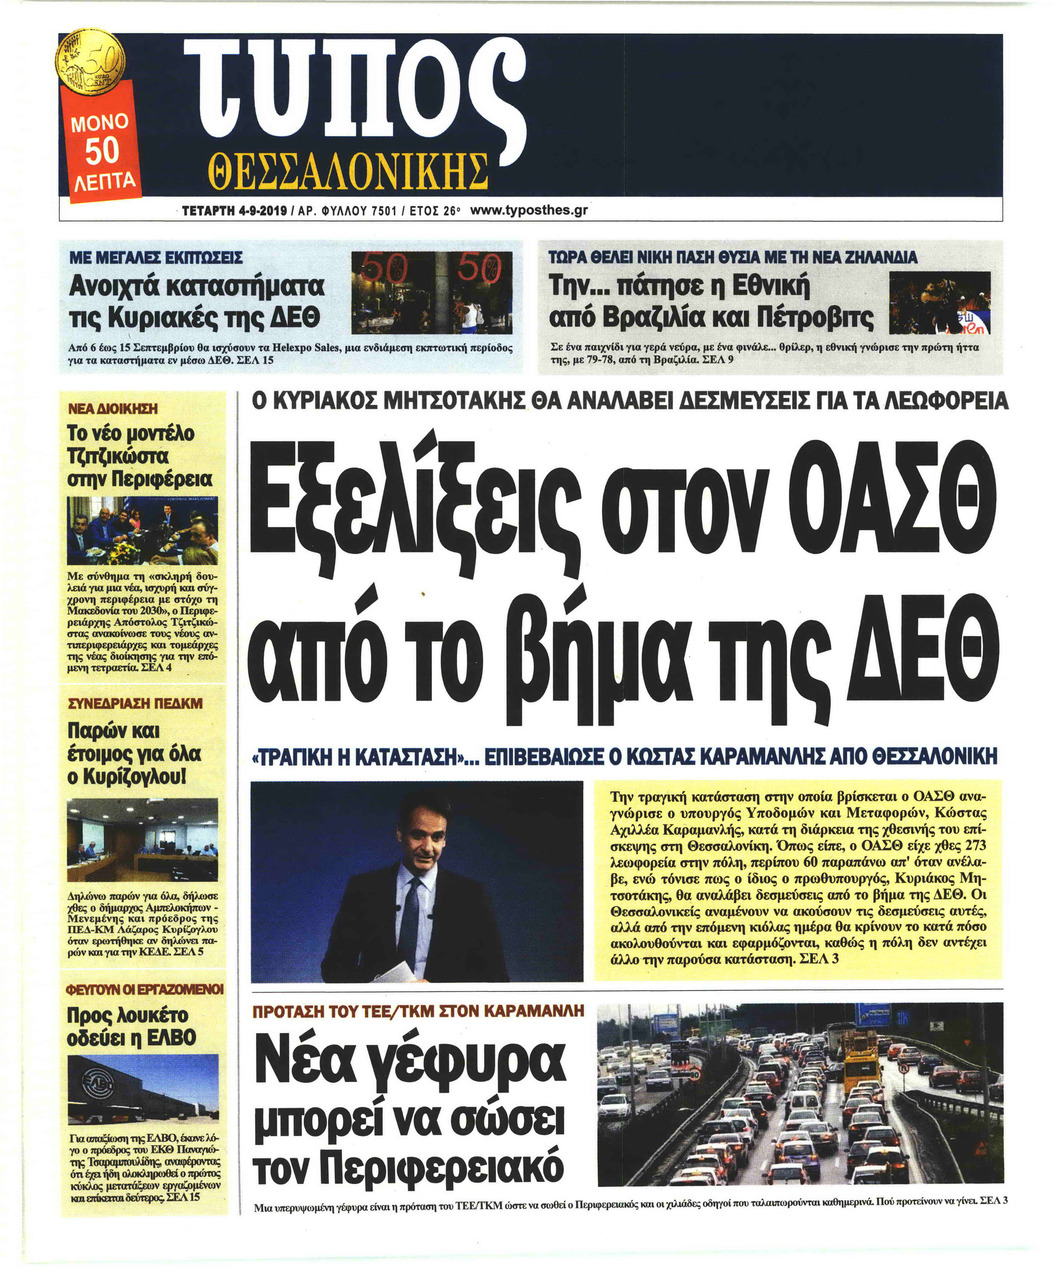 Πρωτοσέλιδο εφημερίδας Τύπος Θεσσαλονίκης